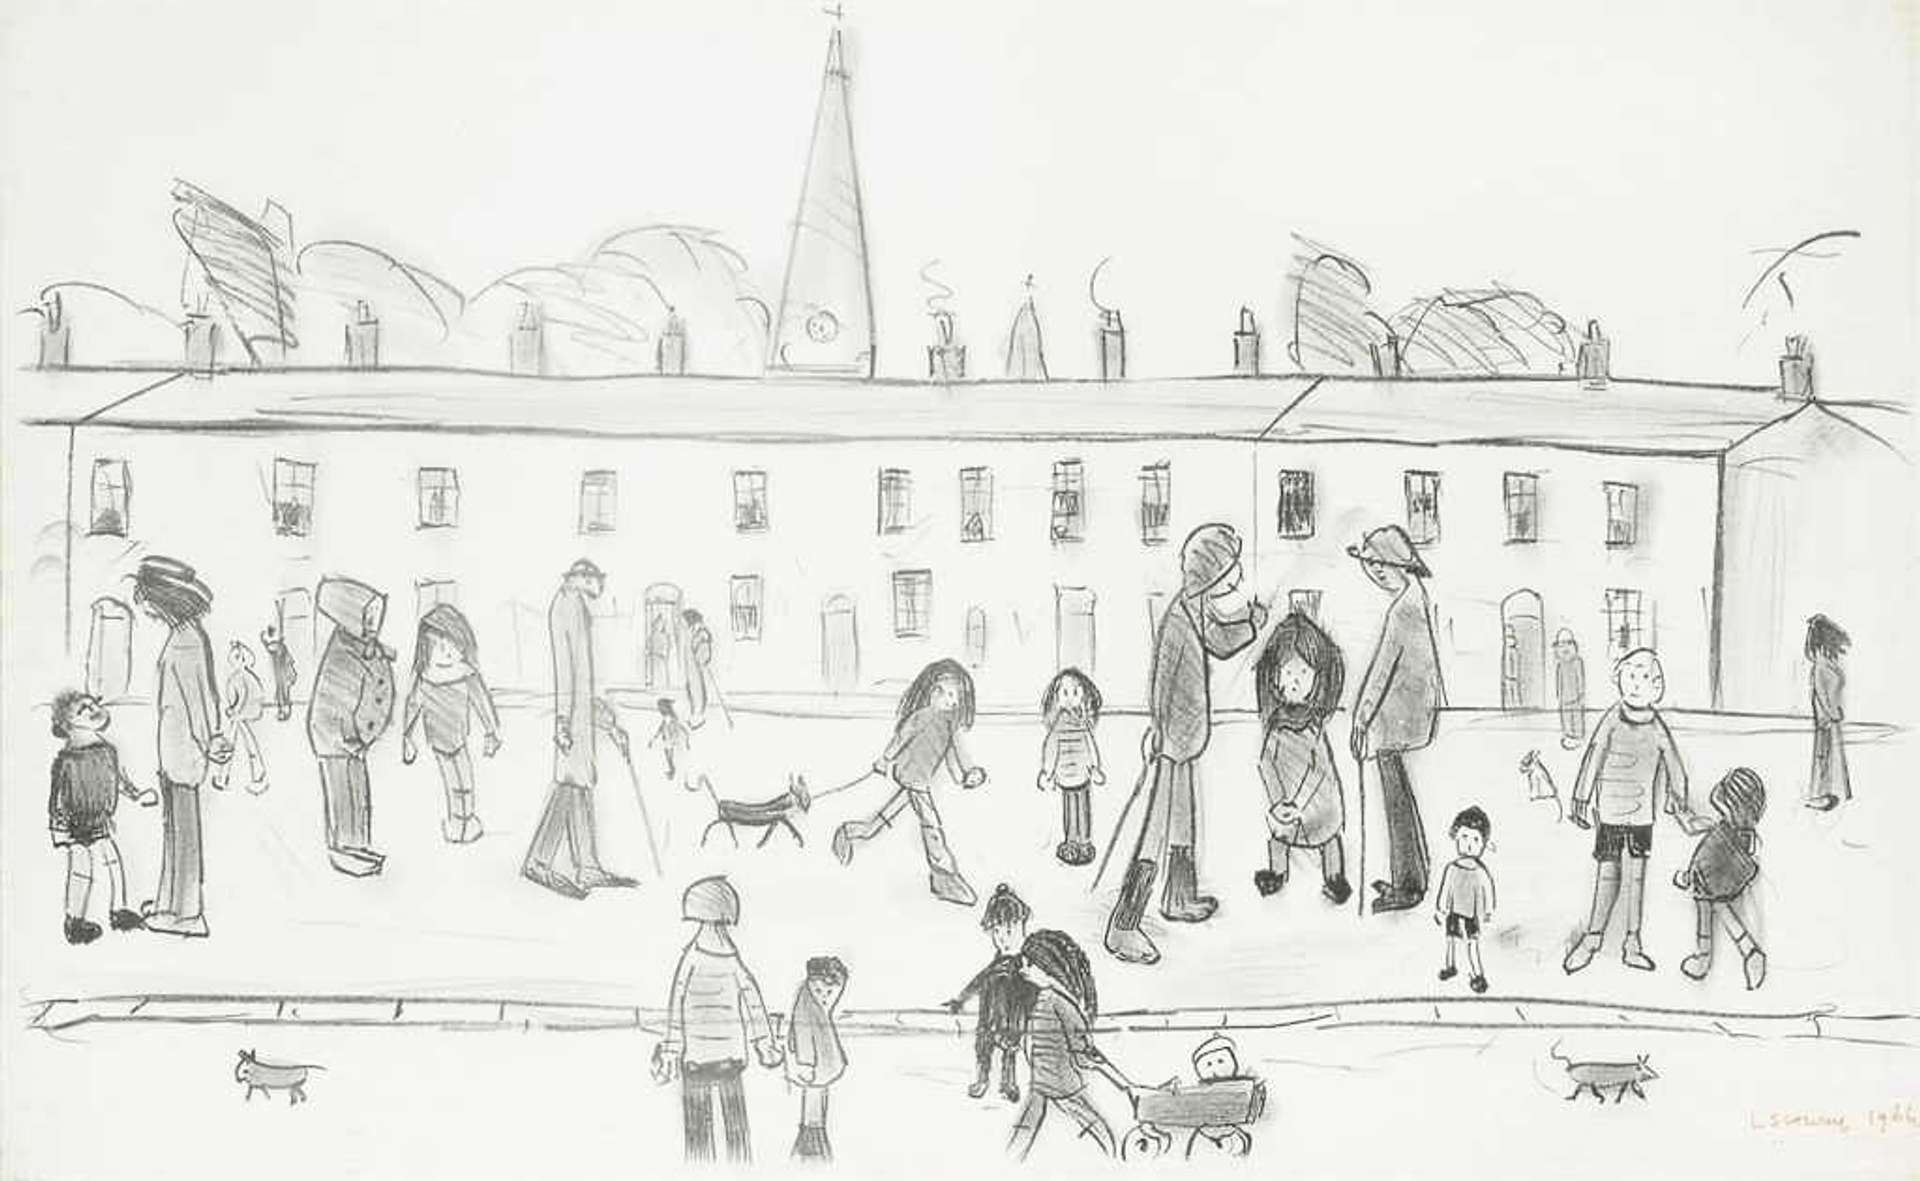 Street Full Of People by L.S. Lowry - MyArtBroker